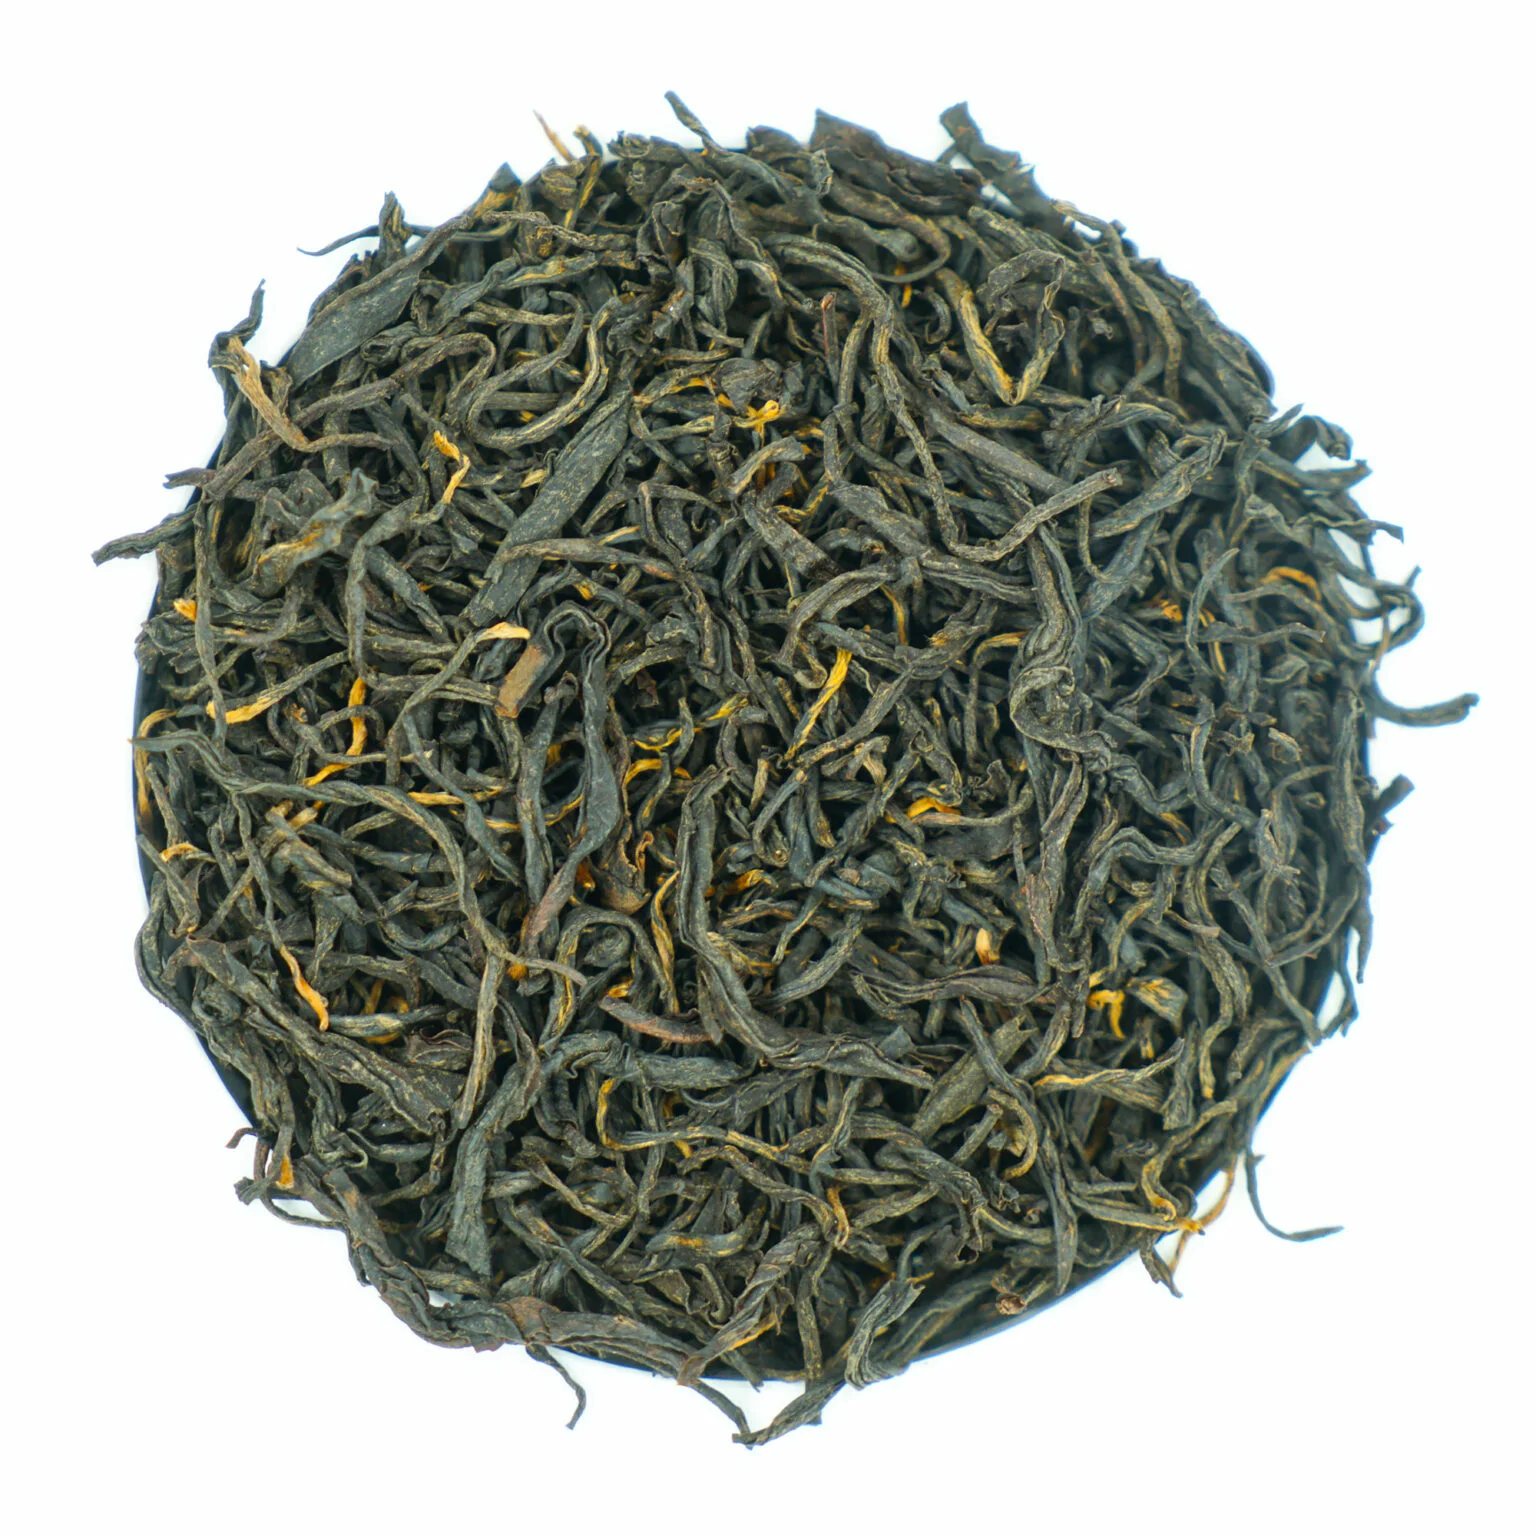 Czarna herbata Nepal Jun Chiyabari Himalayan Imperial - Niezwykłe doświadczenie smaku